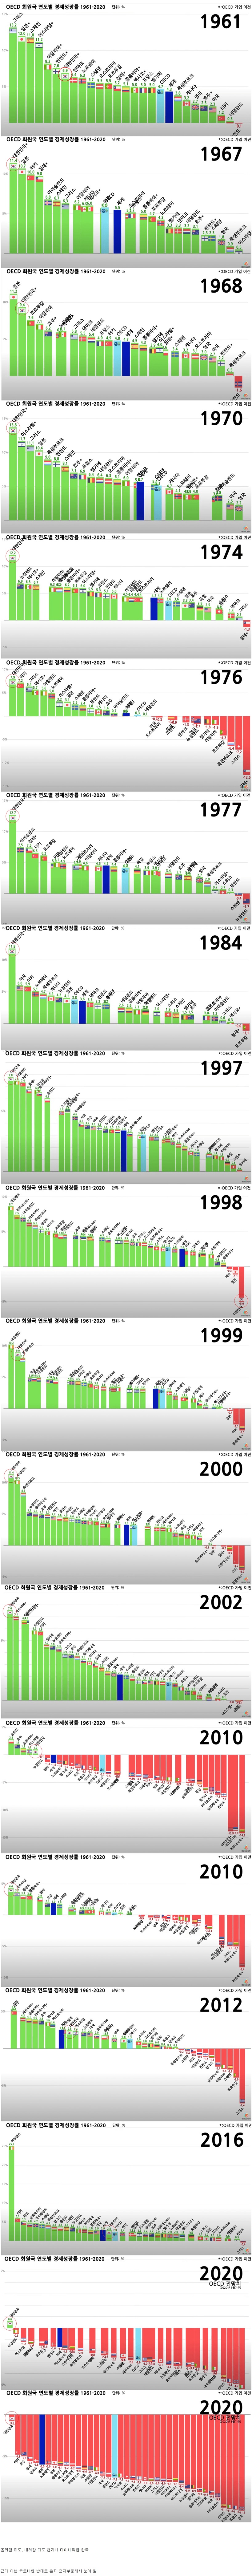 oecd 회원국 연도별 경제성장률 1961- 2020